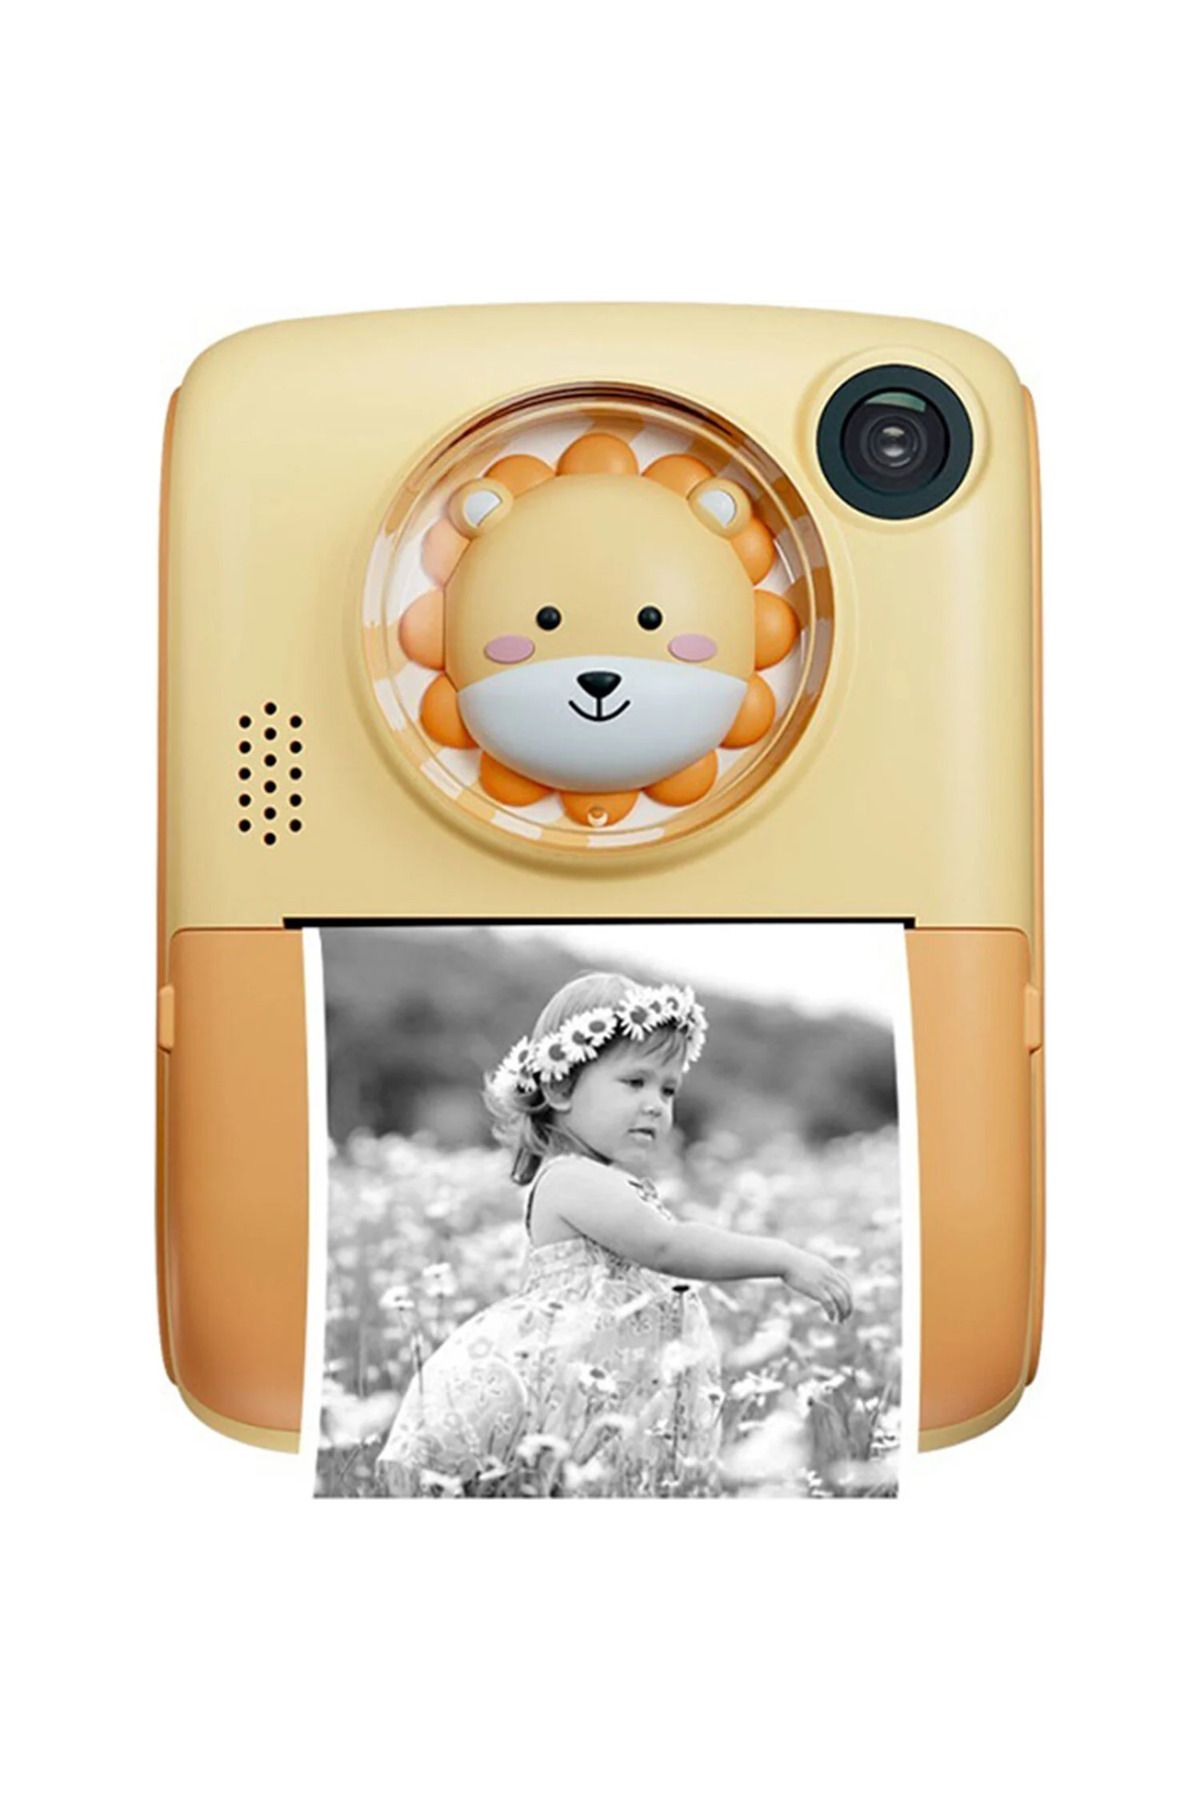 Lisa Butik Anlık Termal Yazıcılı Dijital Çocuk Kamerası 2.0 Inç Hd 1080P Instant Photo Printer Camera